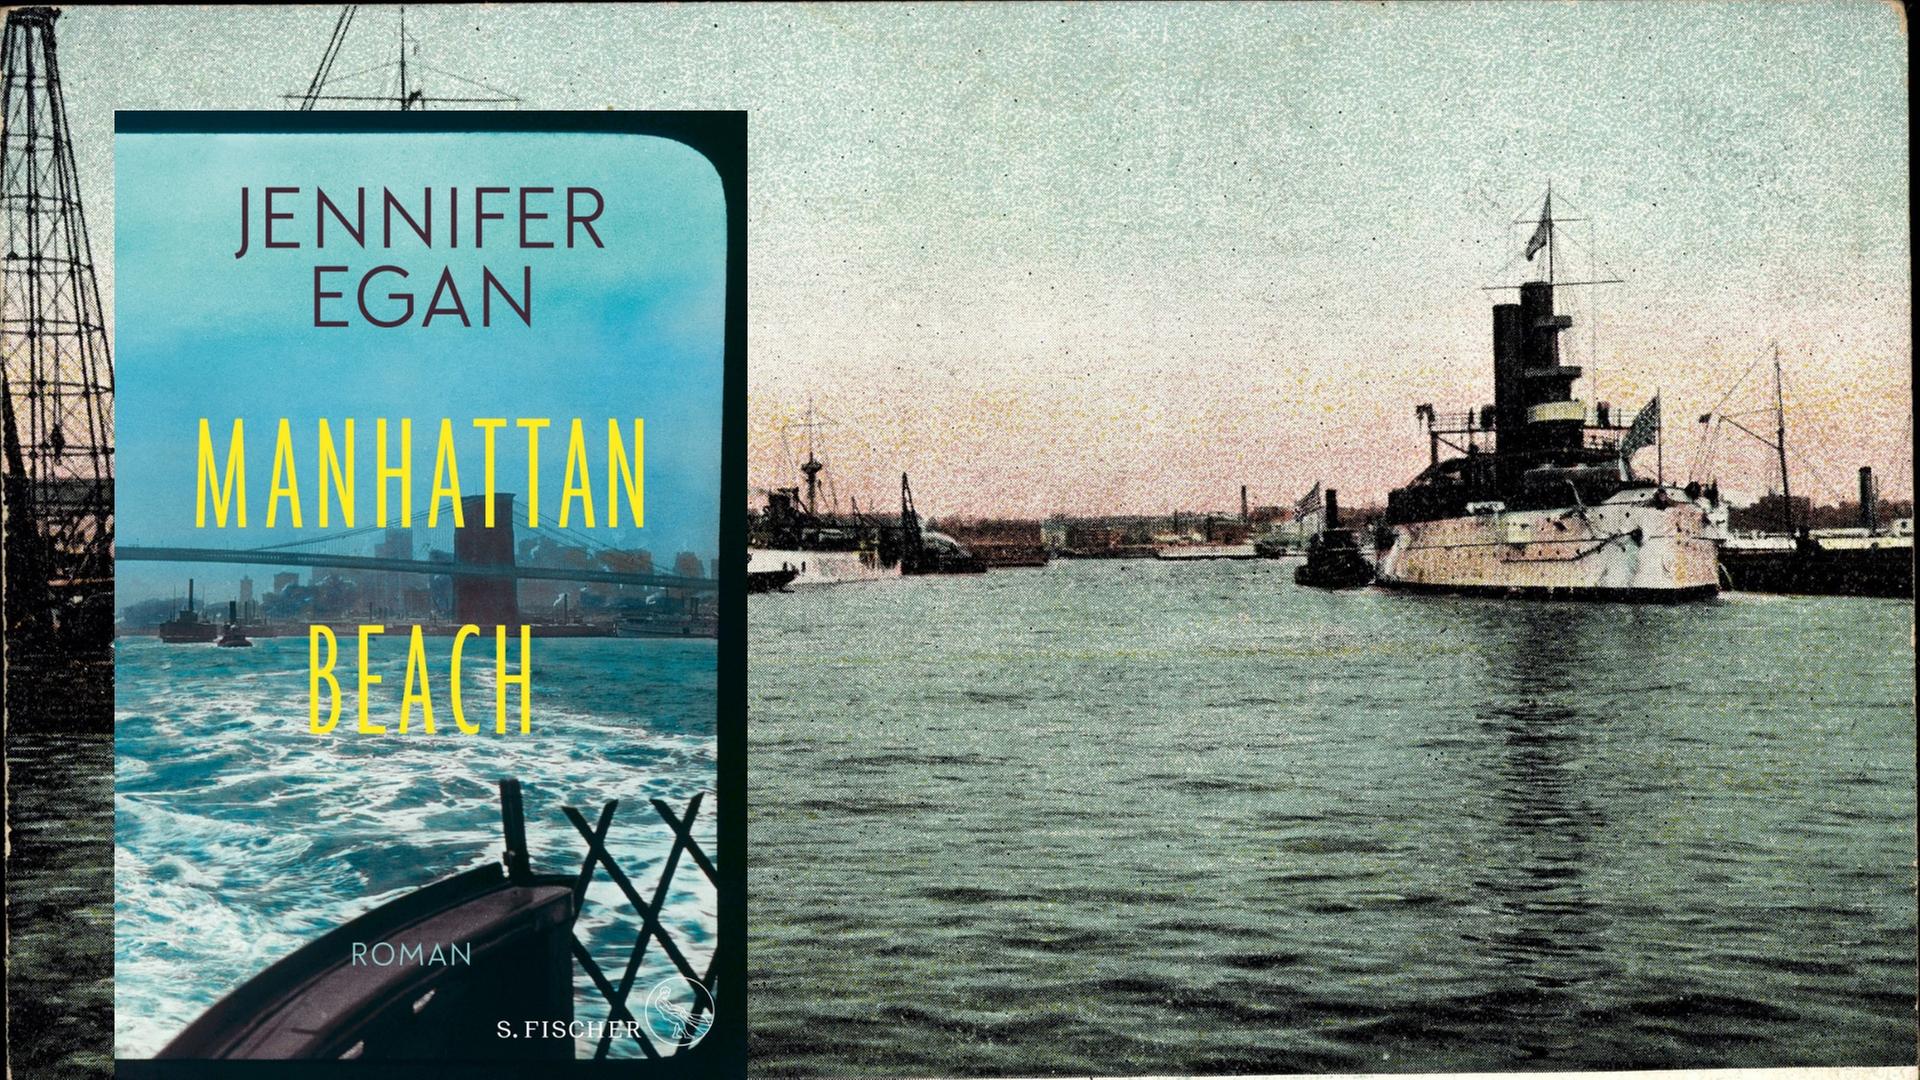 Buchcover: Jennifer Egan: "Manhattan Beach" und historisches Bild des Marine Hafens in Brooklyn, New York